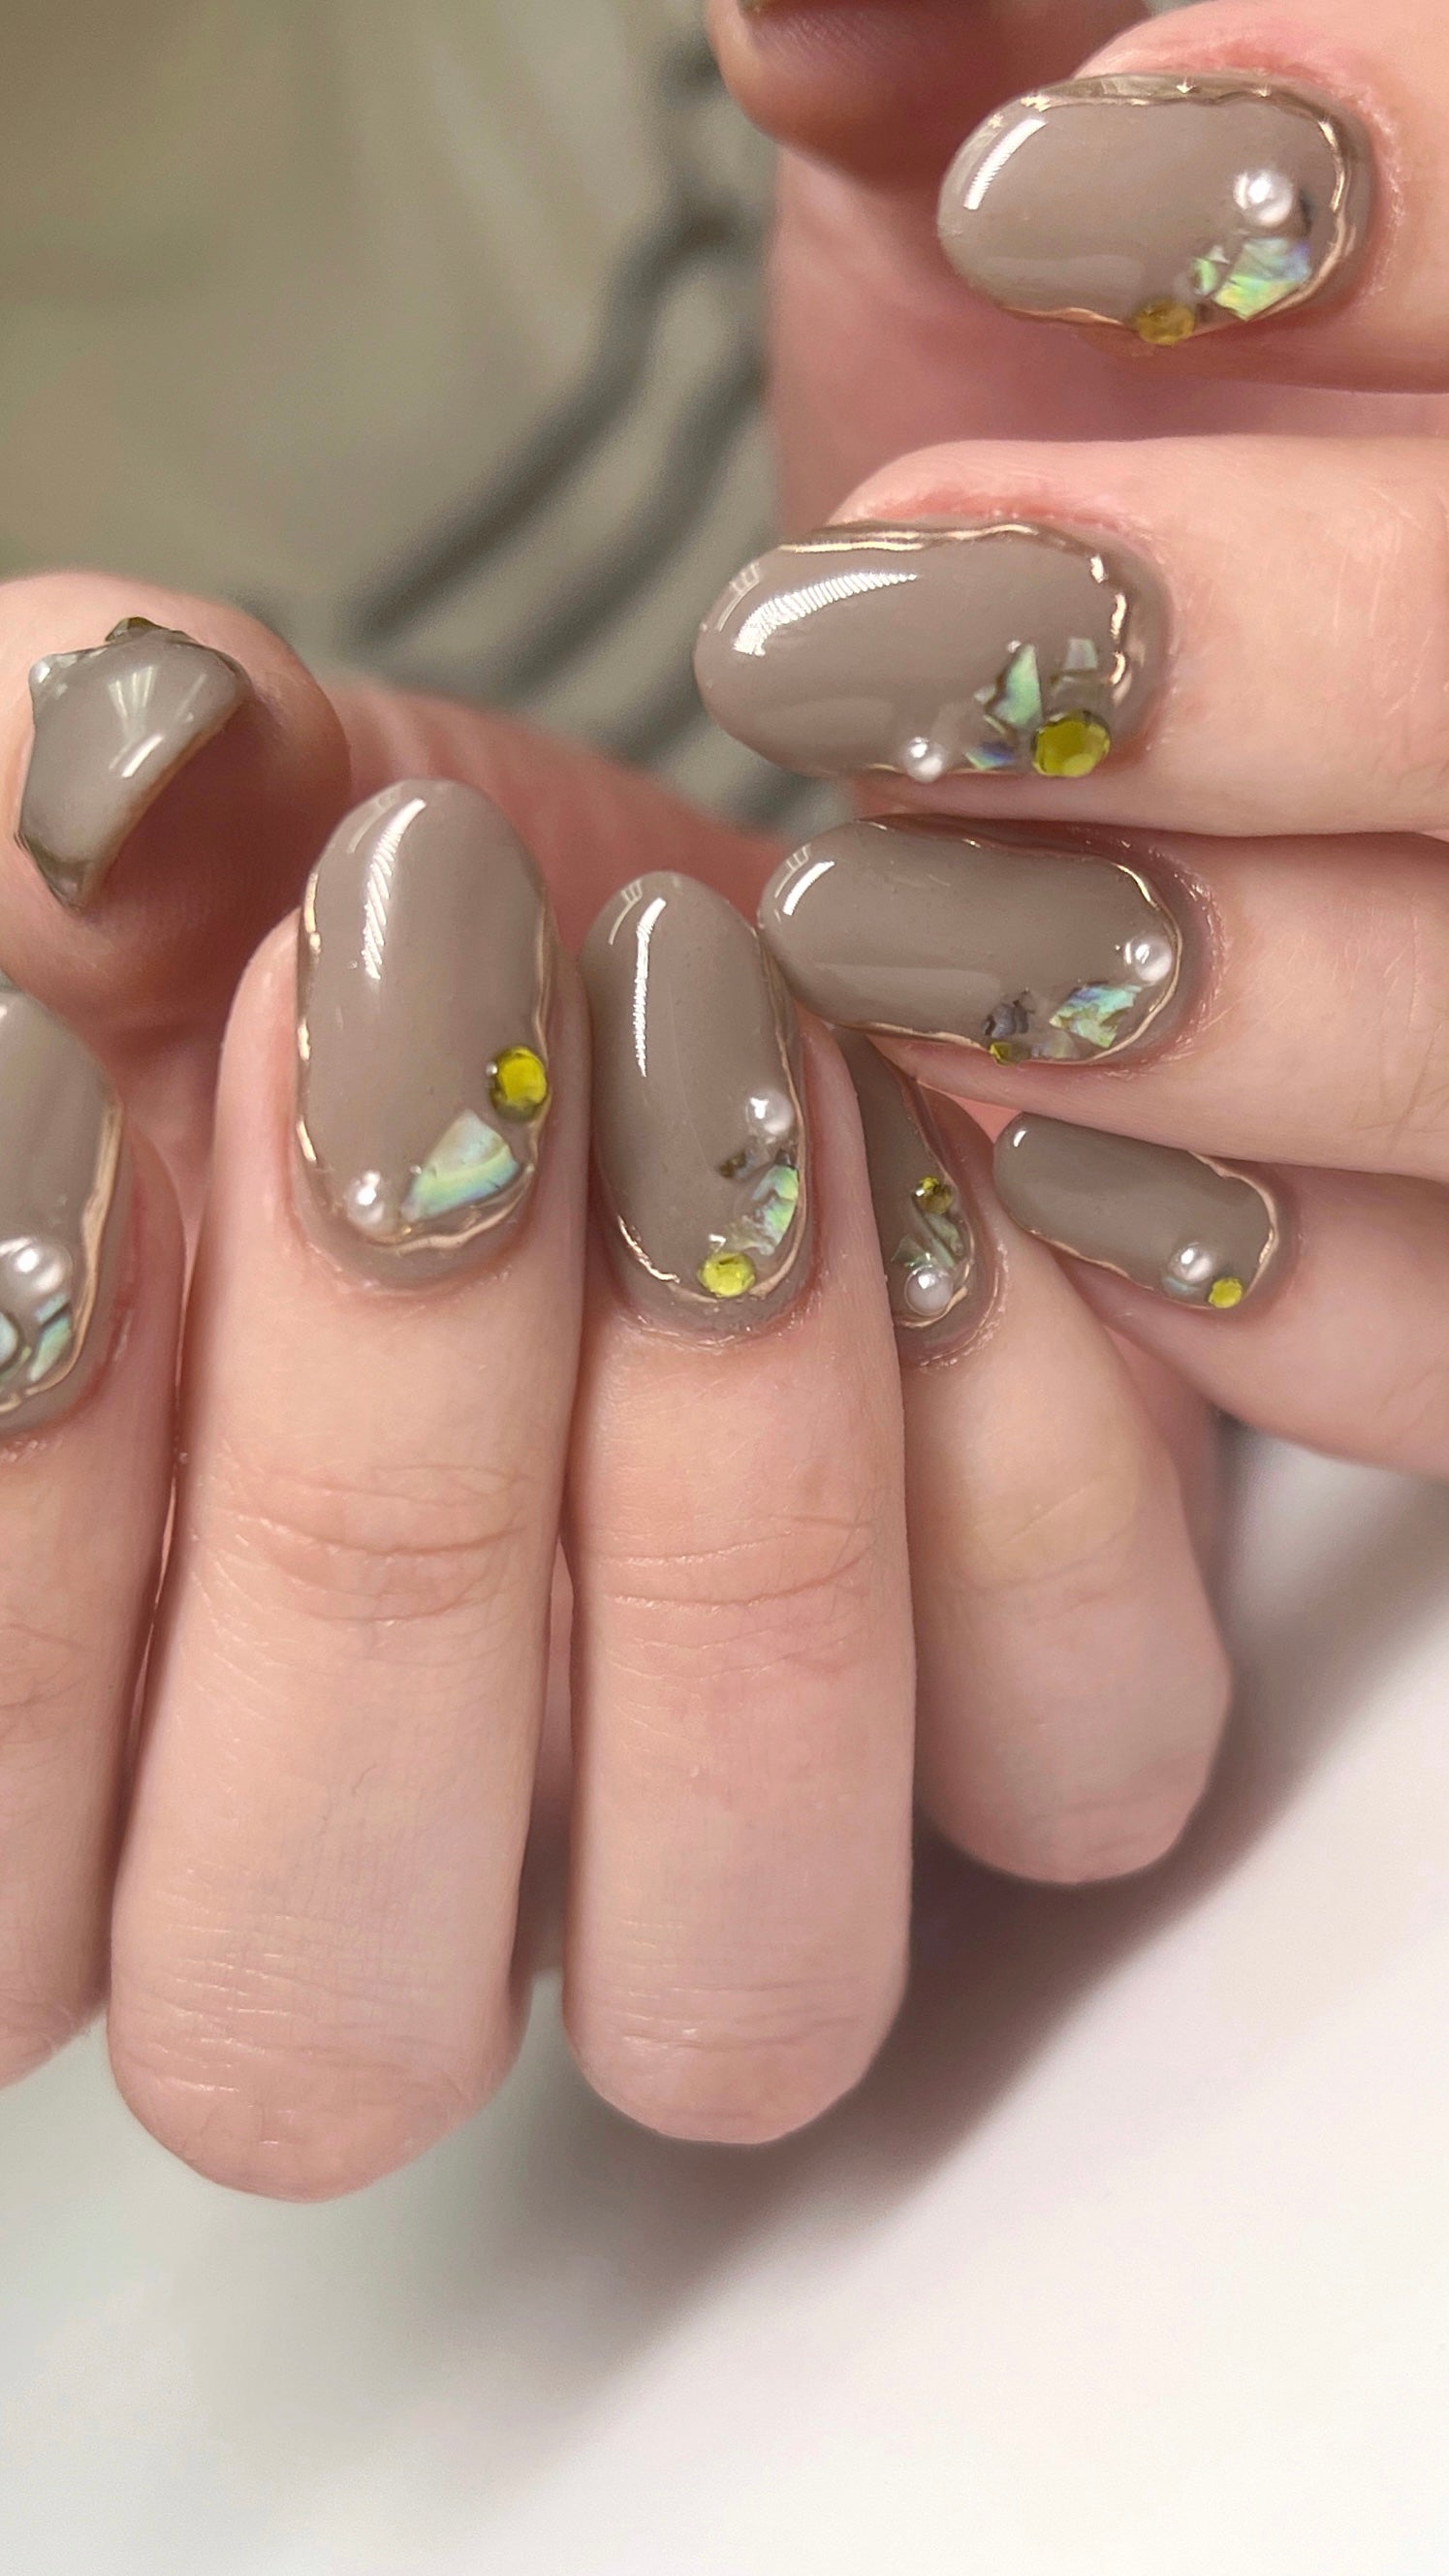  Chrome Palette Nails